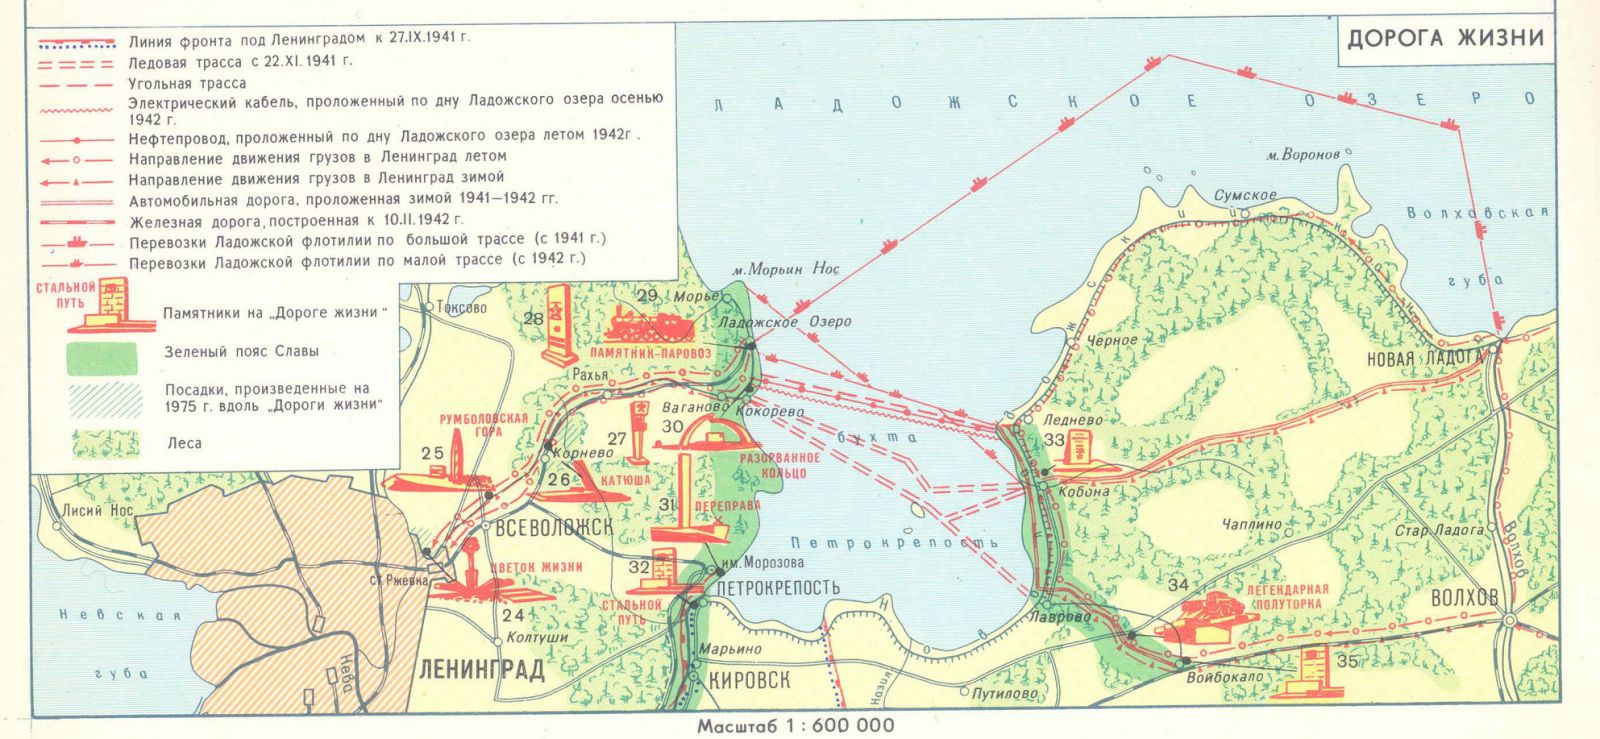 Карта дороги жизни через Ладожское озеро